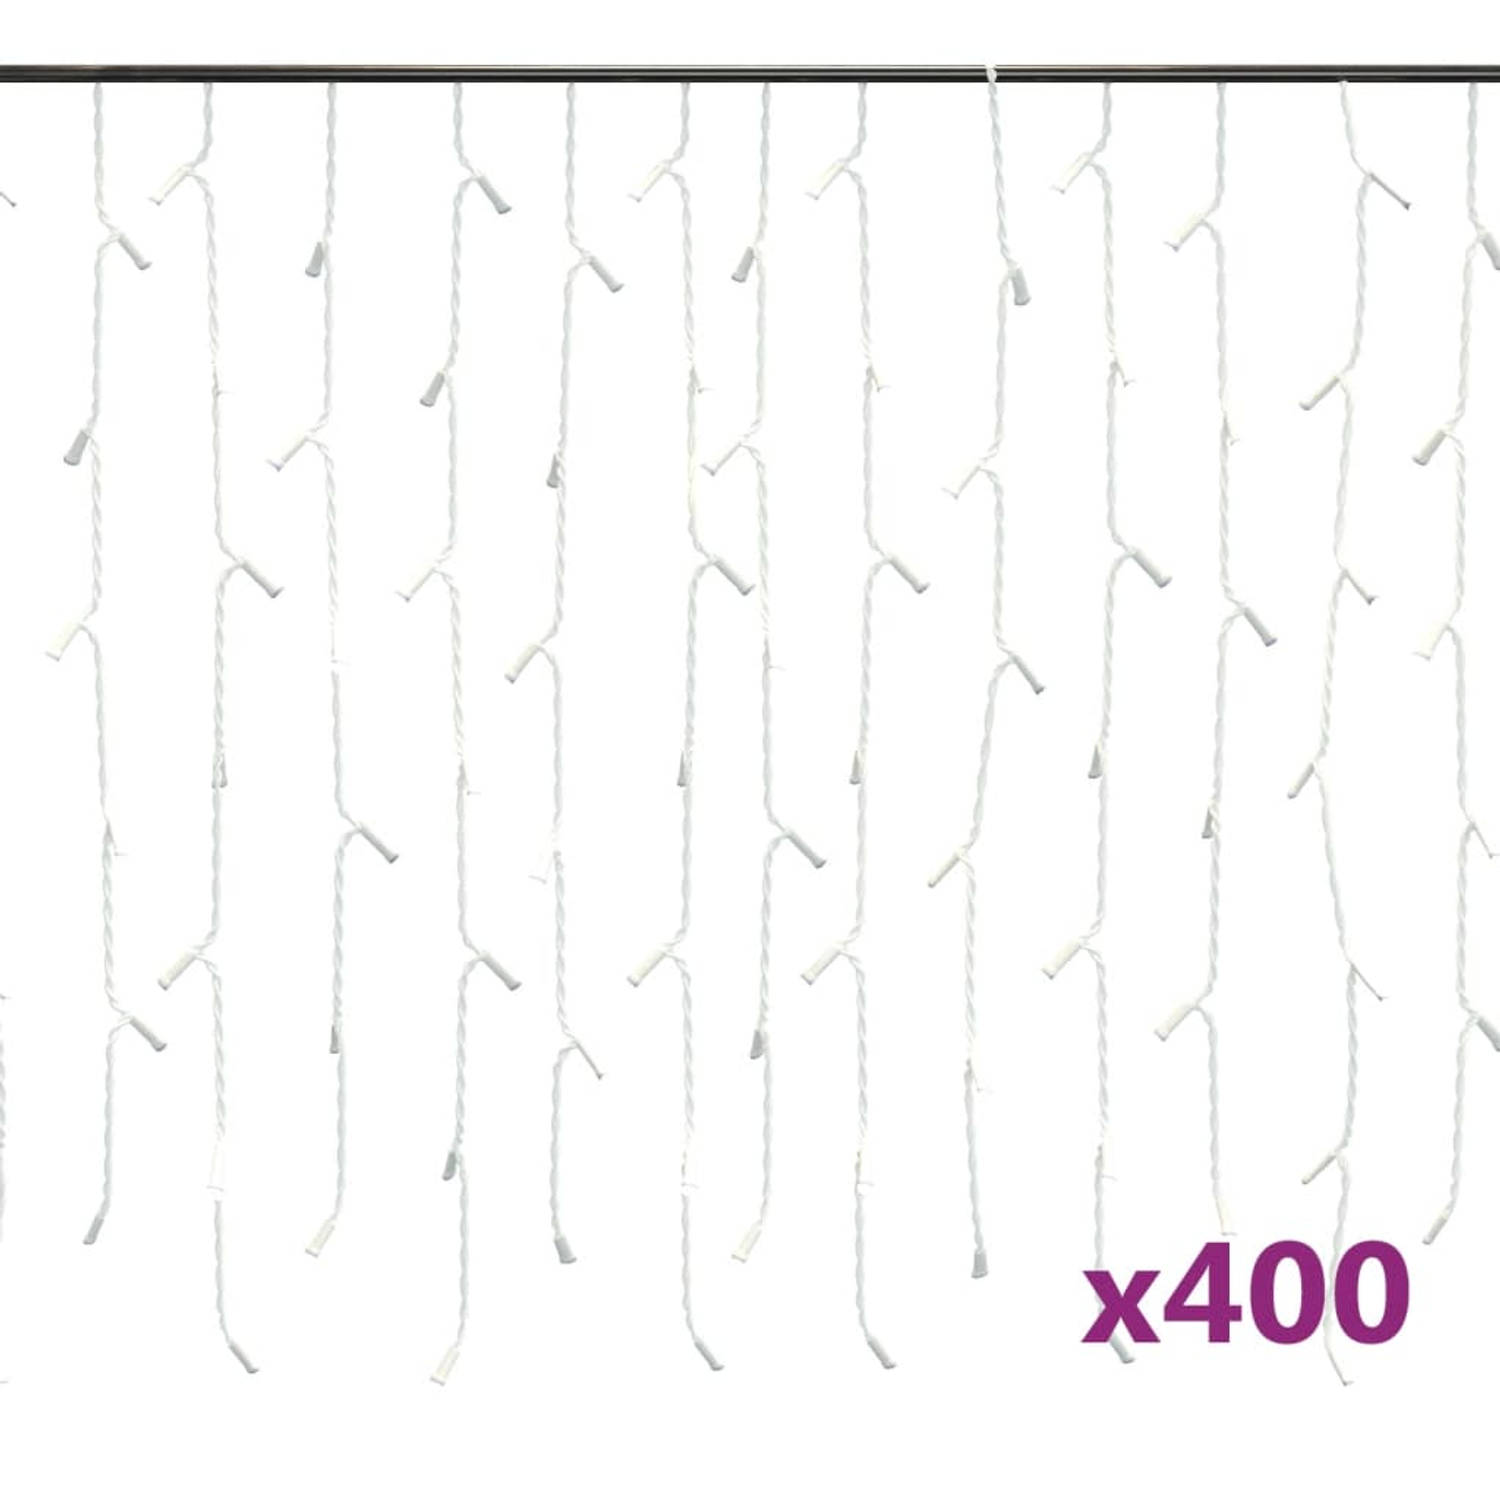 The Living Store Kerstverlichting - Lichtgordijn - 1000 x (40-72) cm - Meerkleurig - 400 LEDs